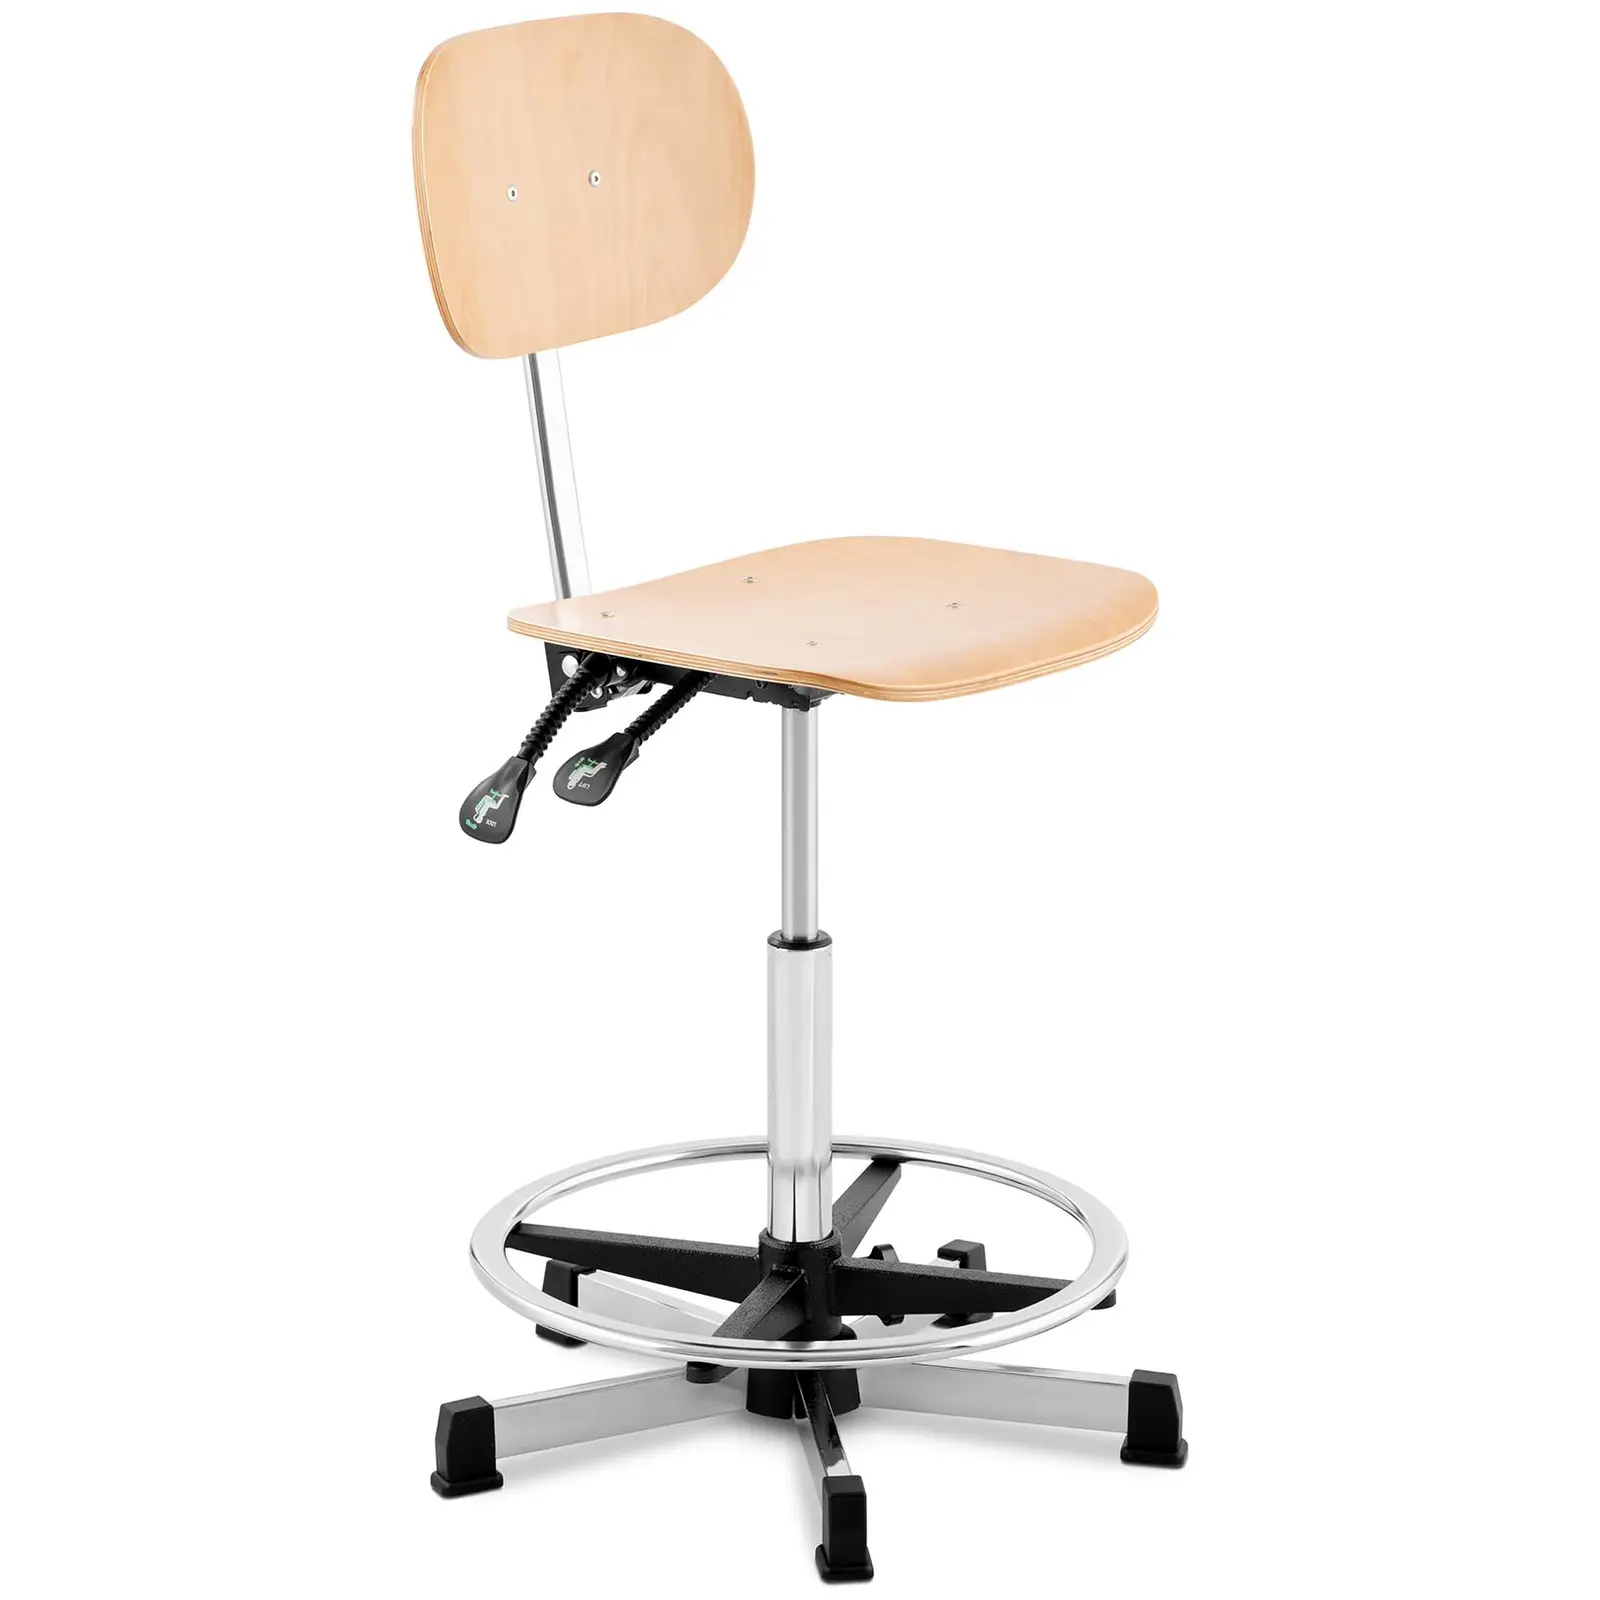 Cadeira de trabalho - 120 kg - madeira, elementos cromados - apoio para os pés - altura 550 - 800 mm